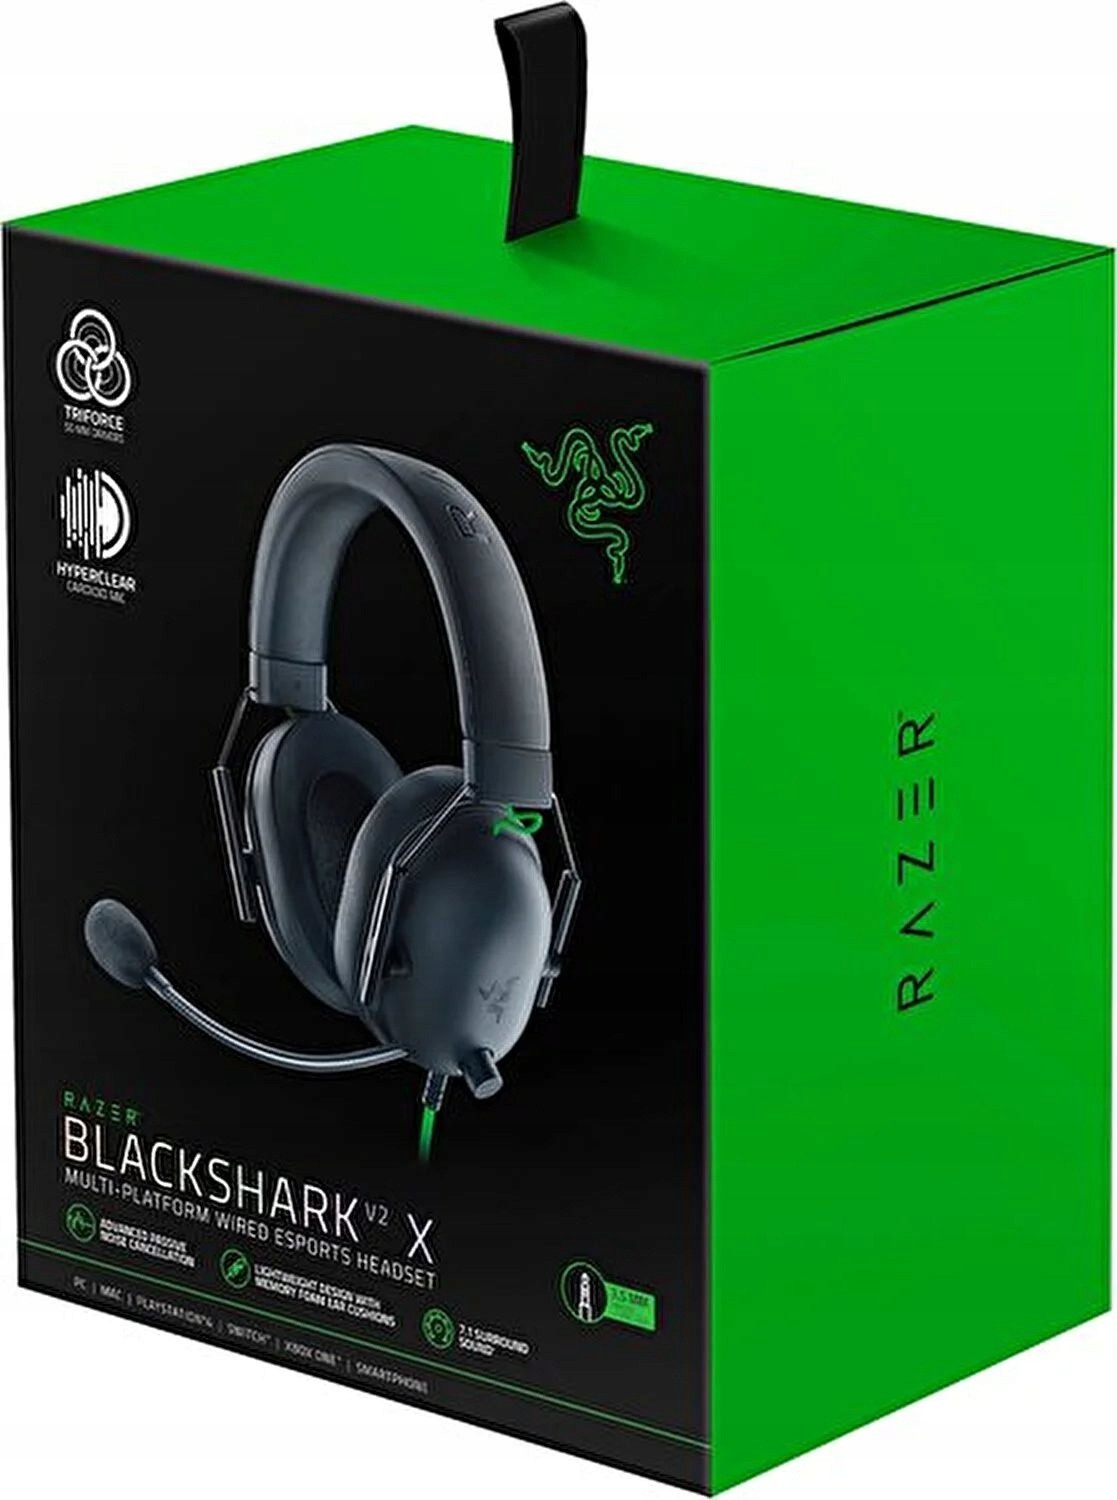 Razer Blackshark V2 X Černý Box Originál drátová sluchátka